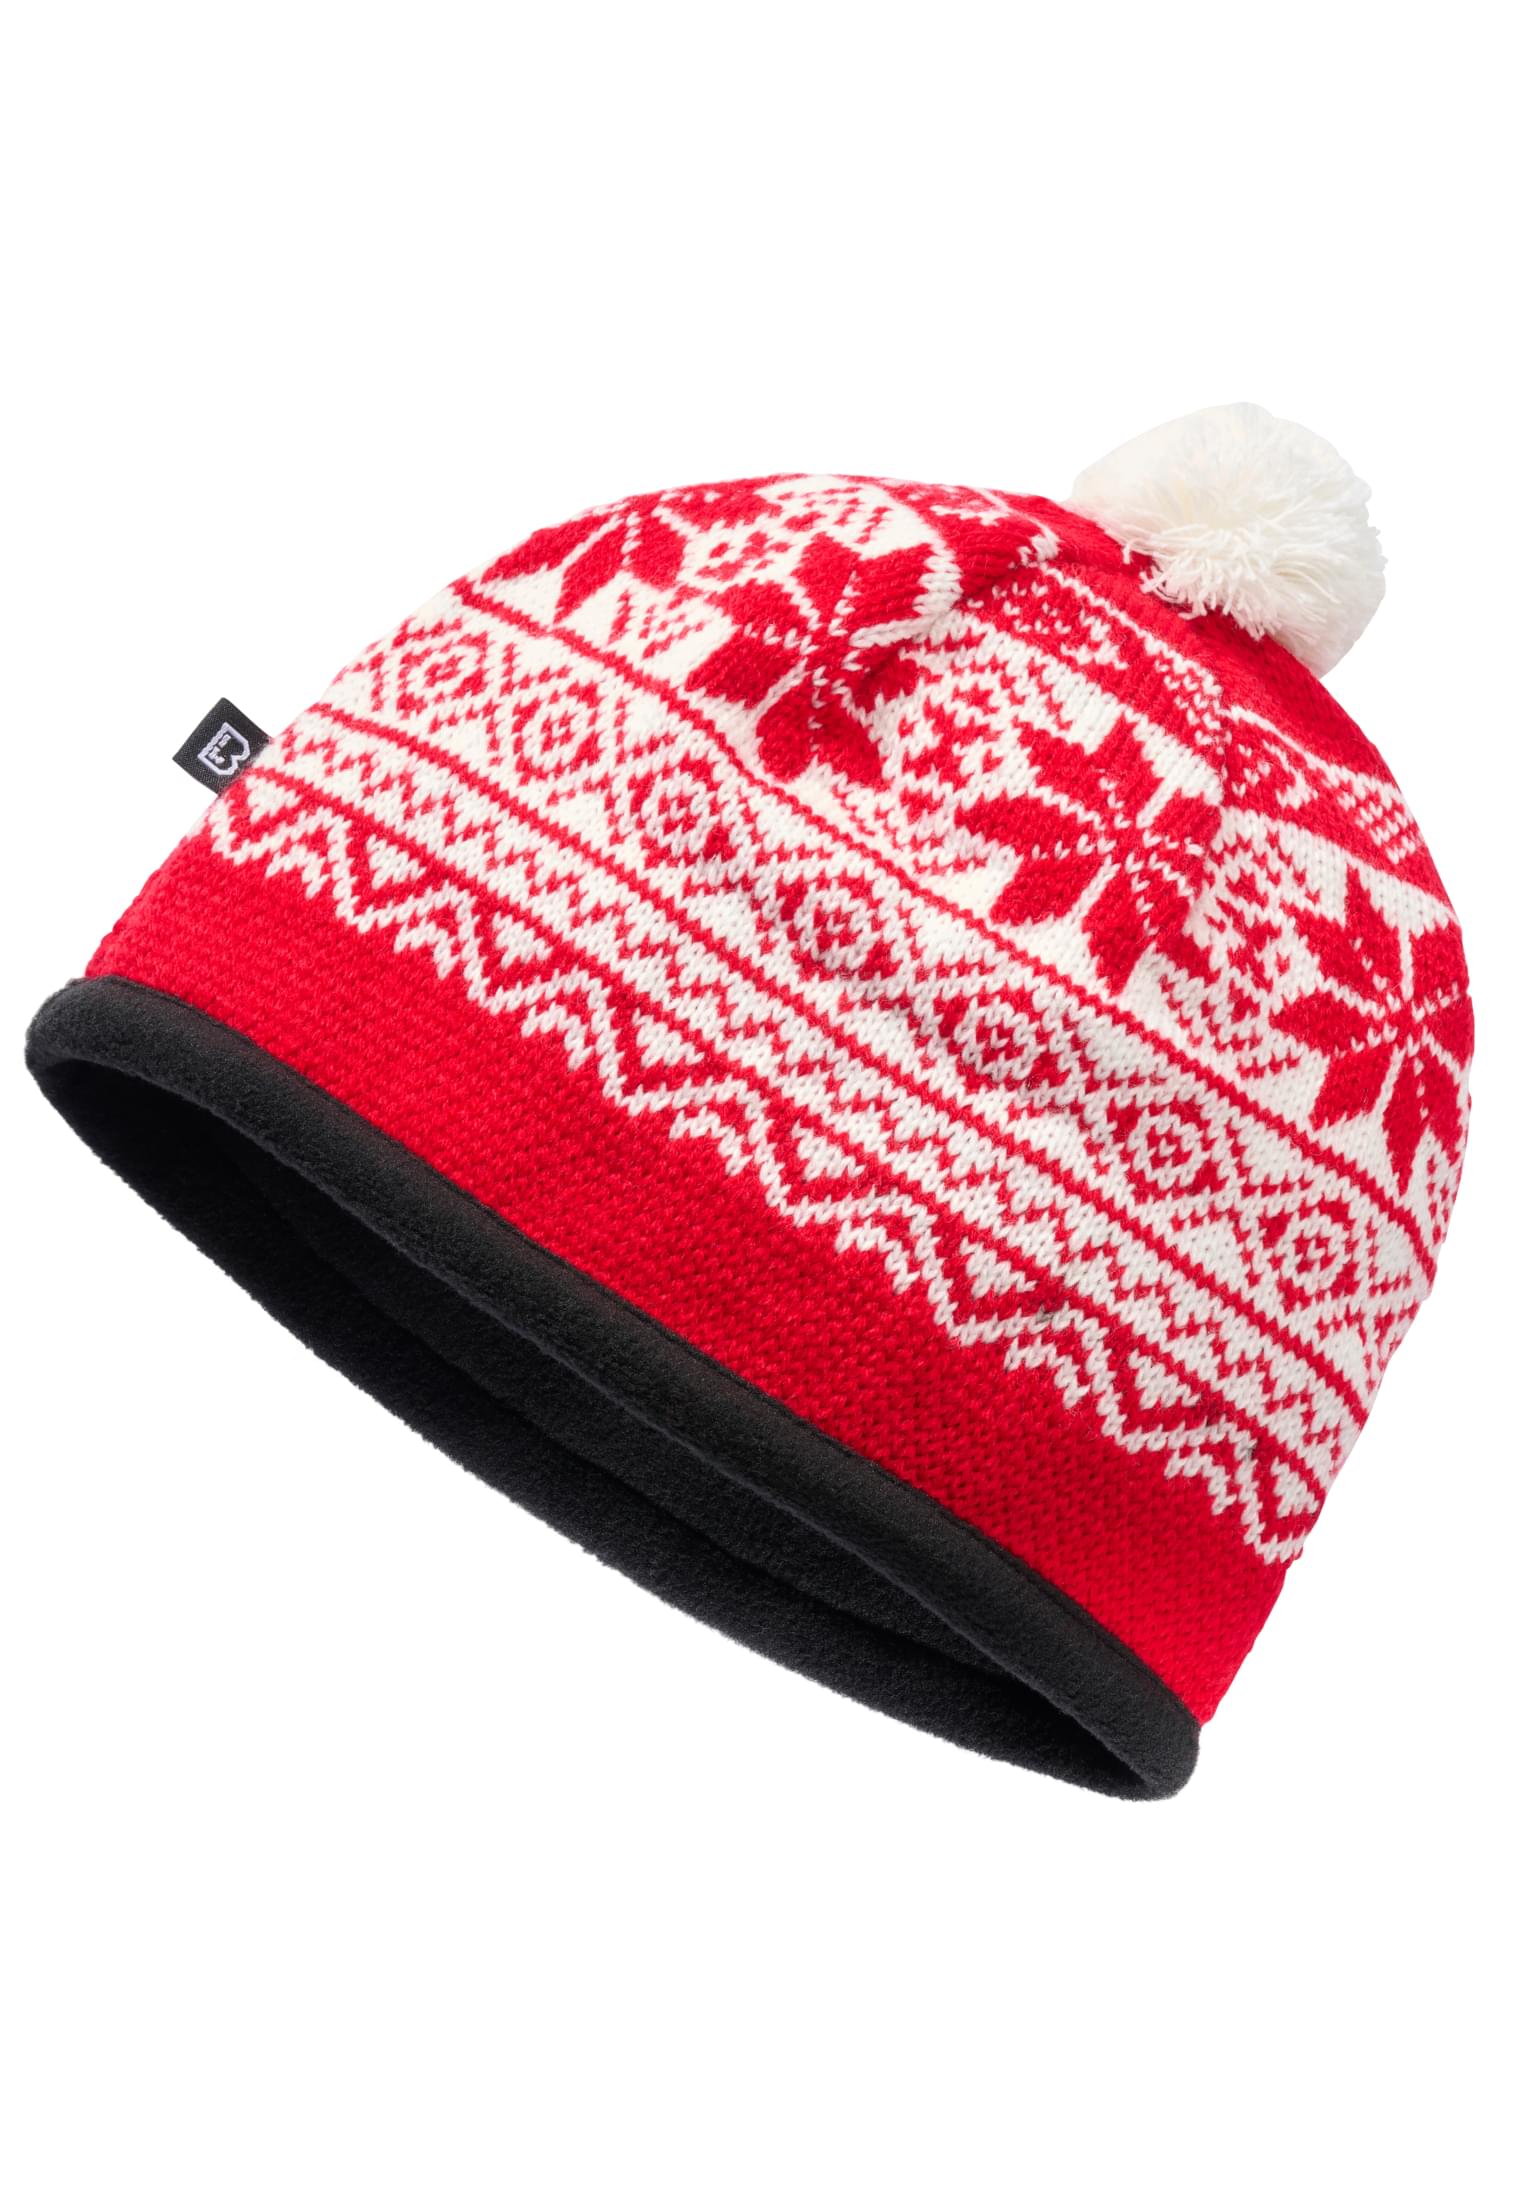 Snow cap - red